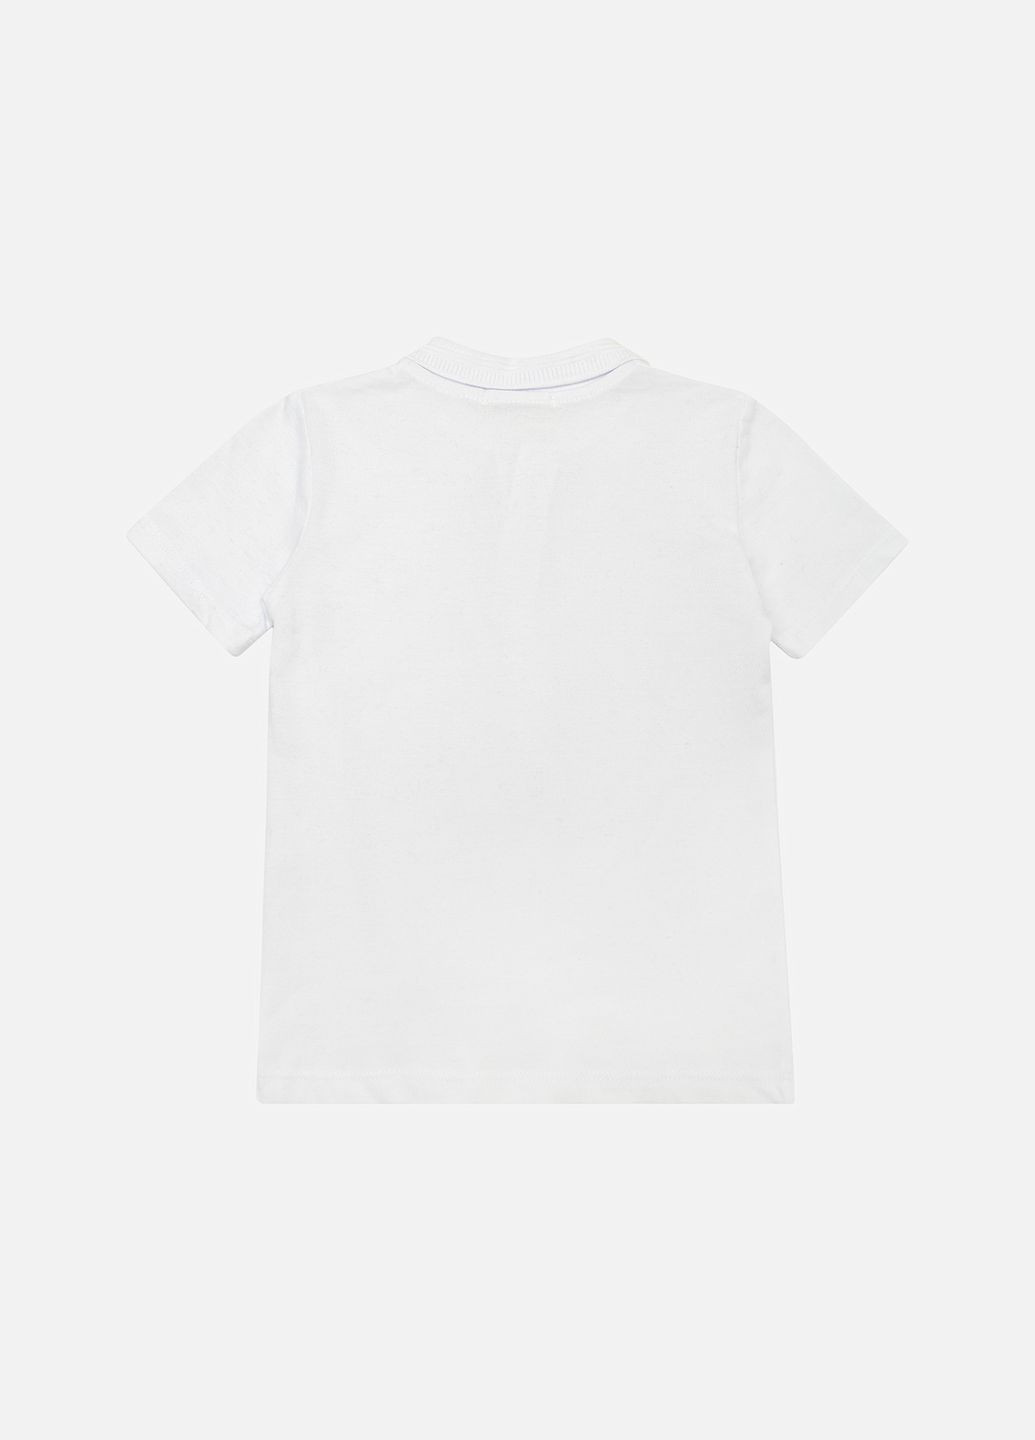 Белая детская футболка-футболка поло для мальчика цвет белый цб-00222247 для мальчика Pengim